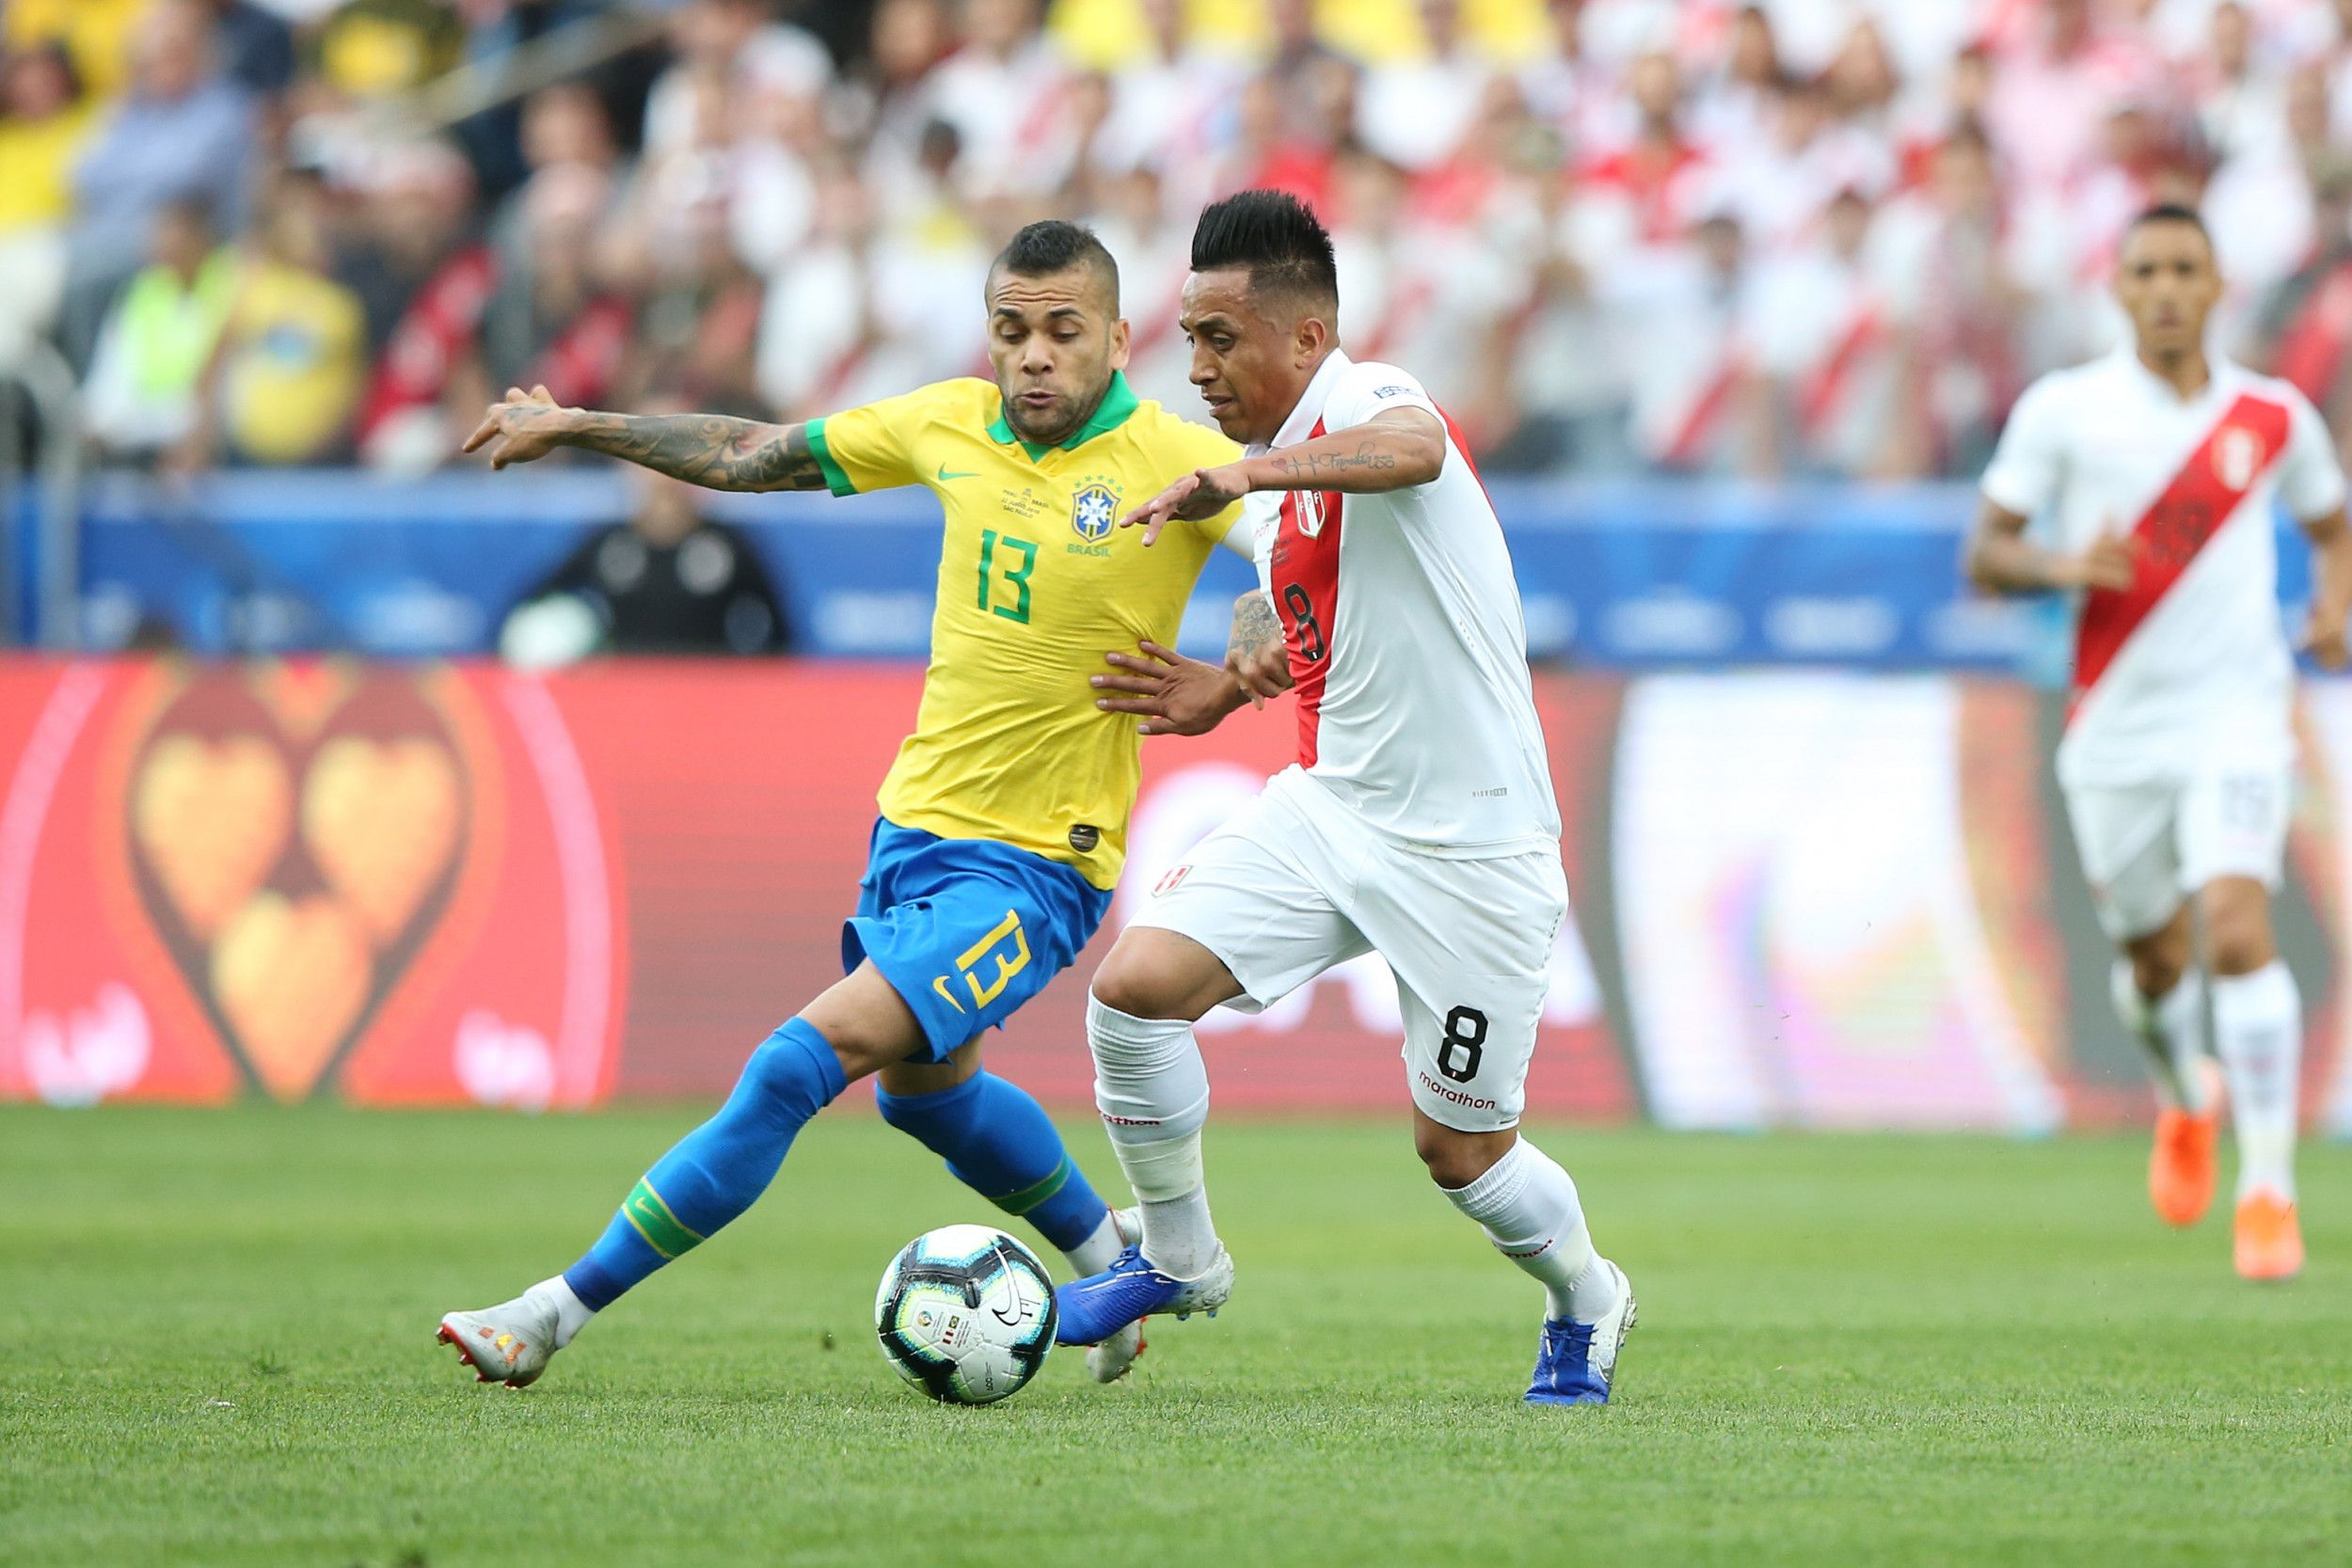 Copa America Final 2019: Where to Watch Brazil vs. Peru, Live Stream, Latest Odds, TV Schedule